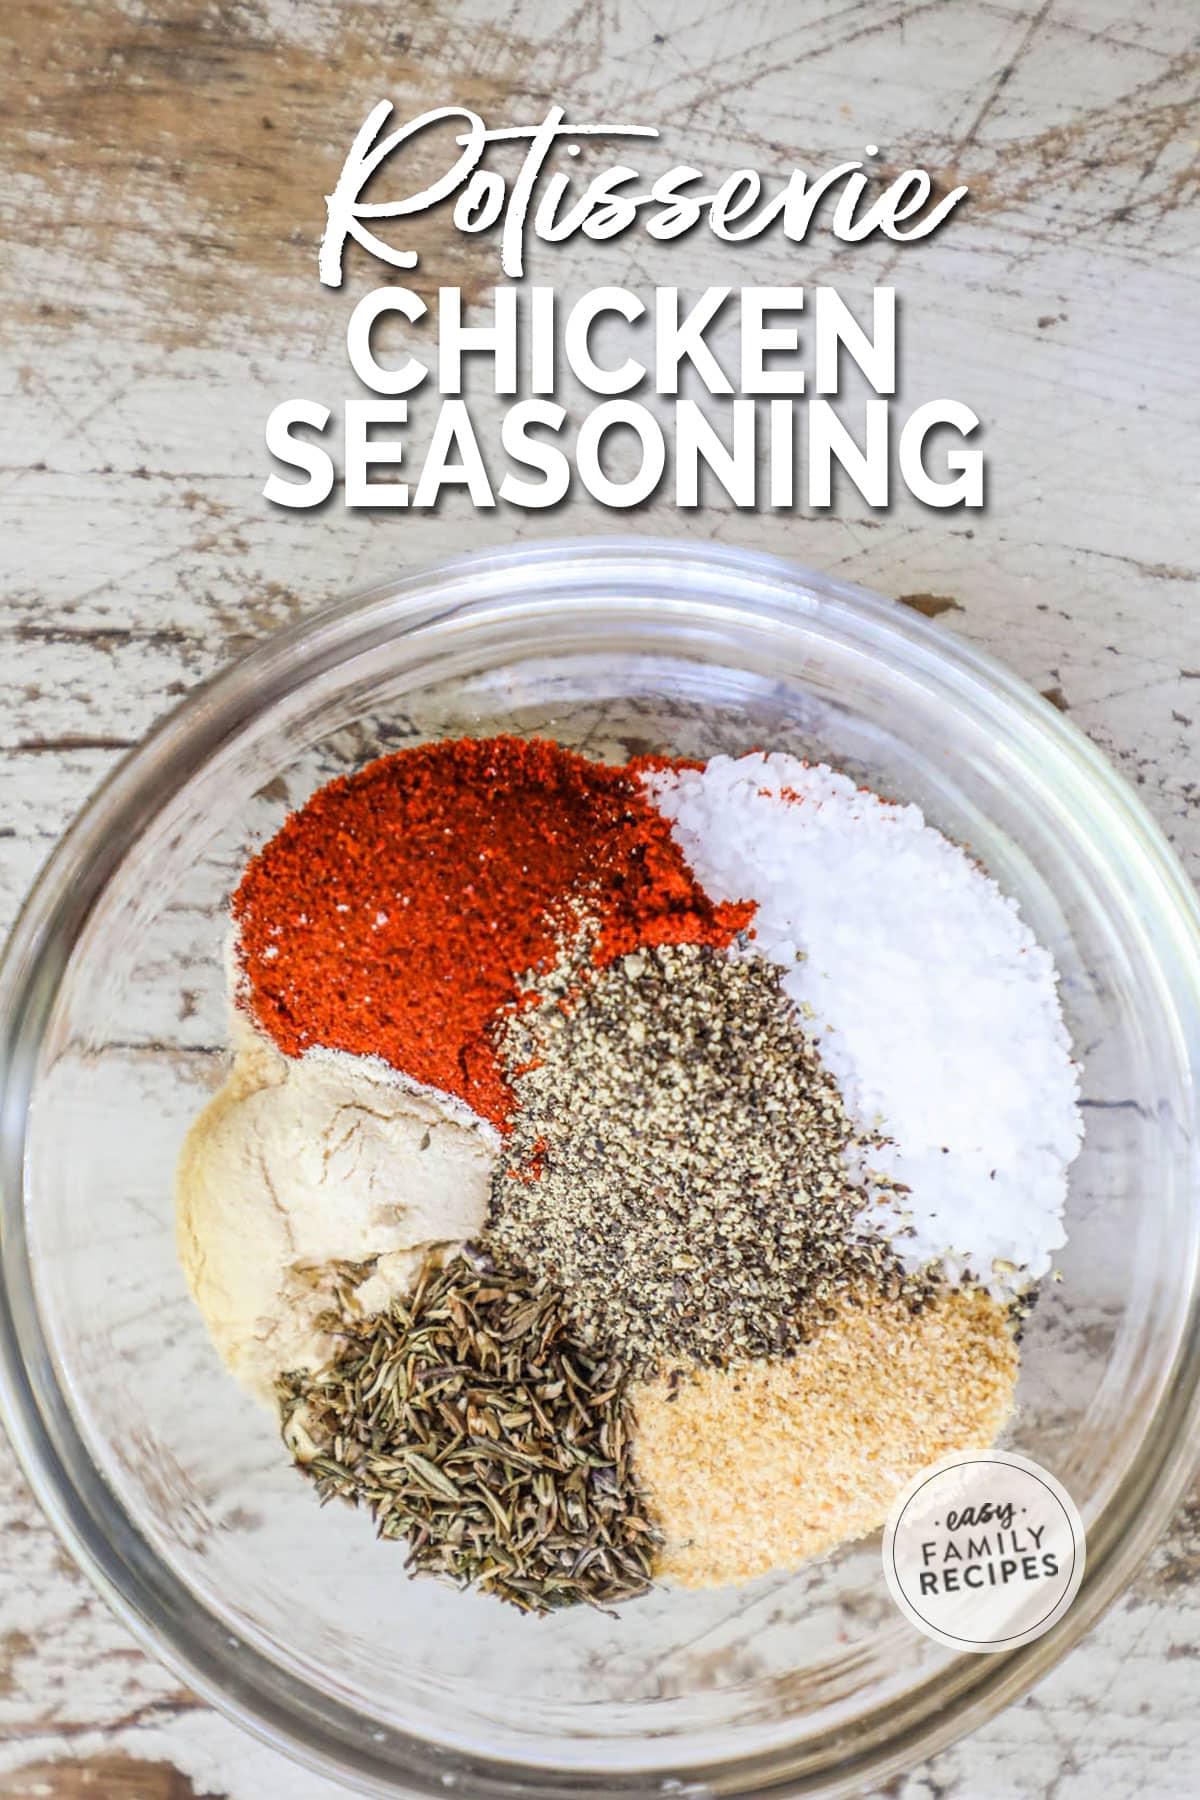 Spices to make Rotisserie chicken seasoning